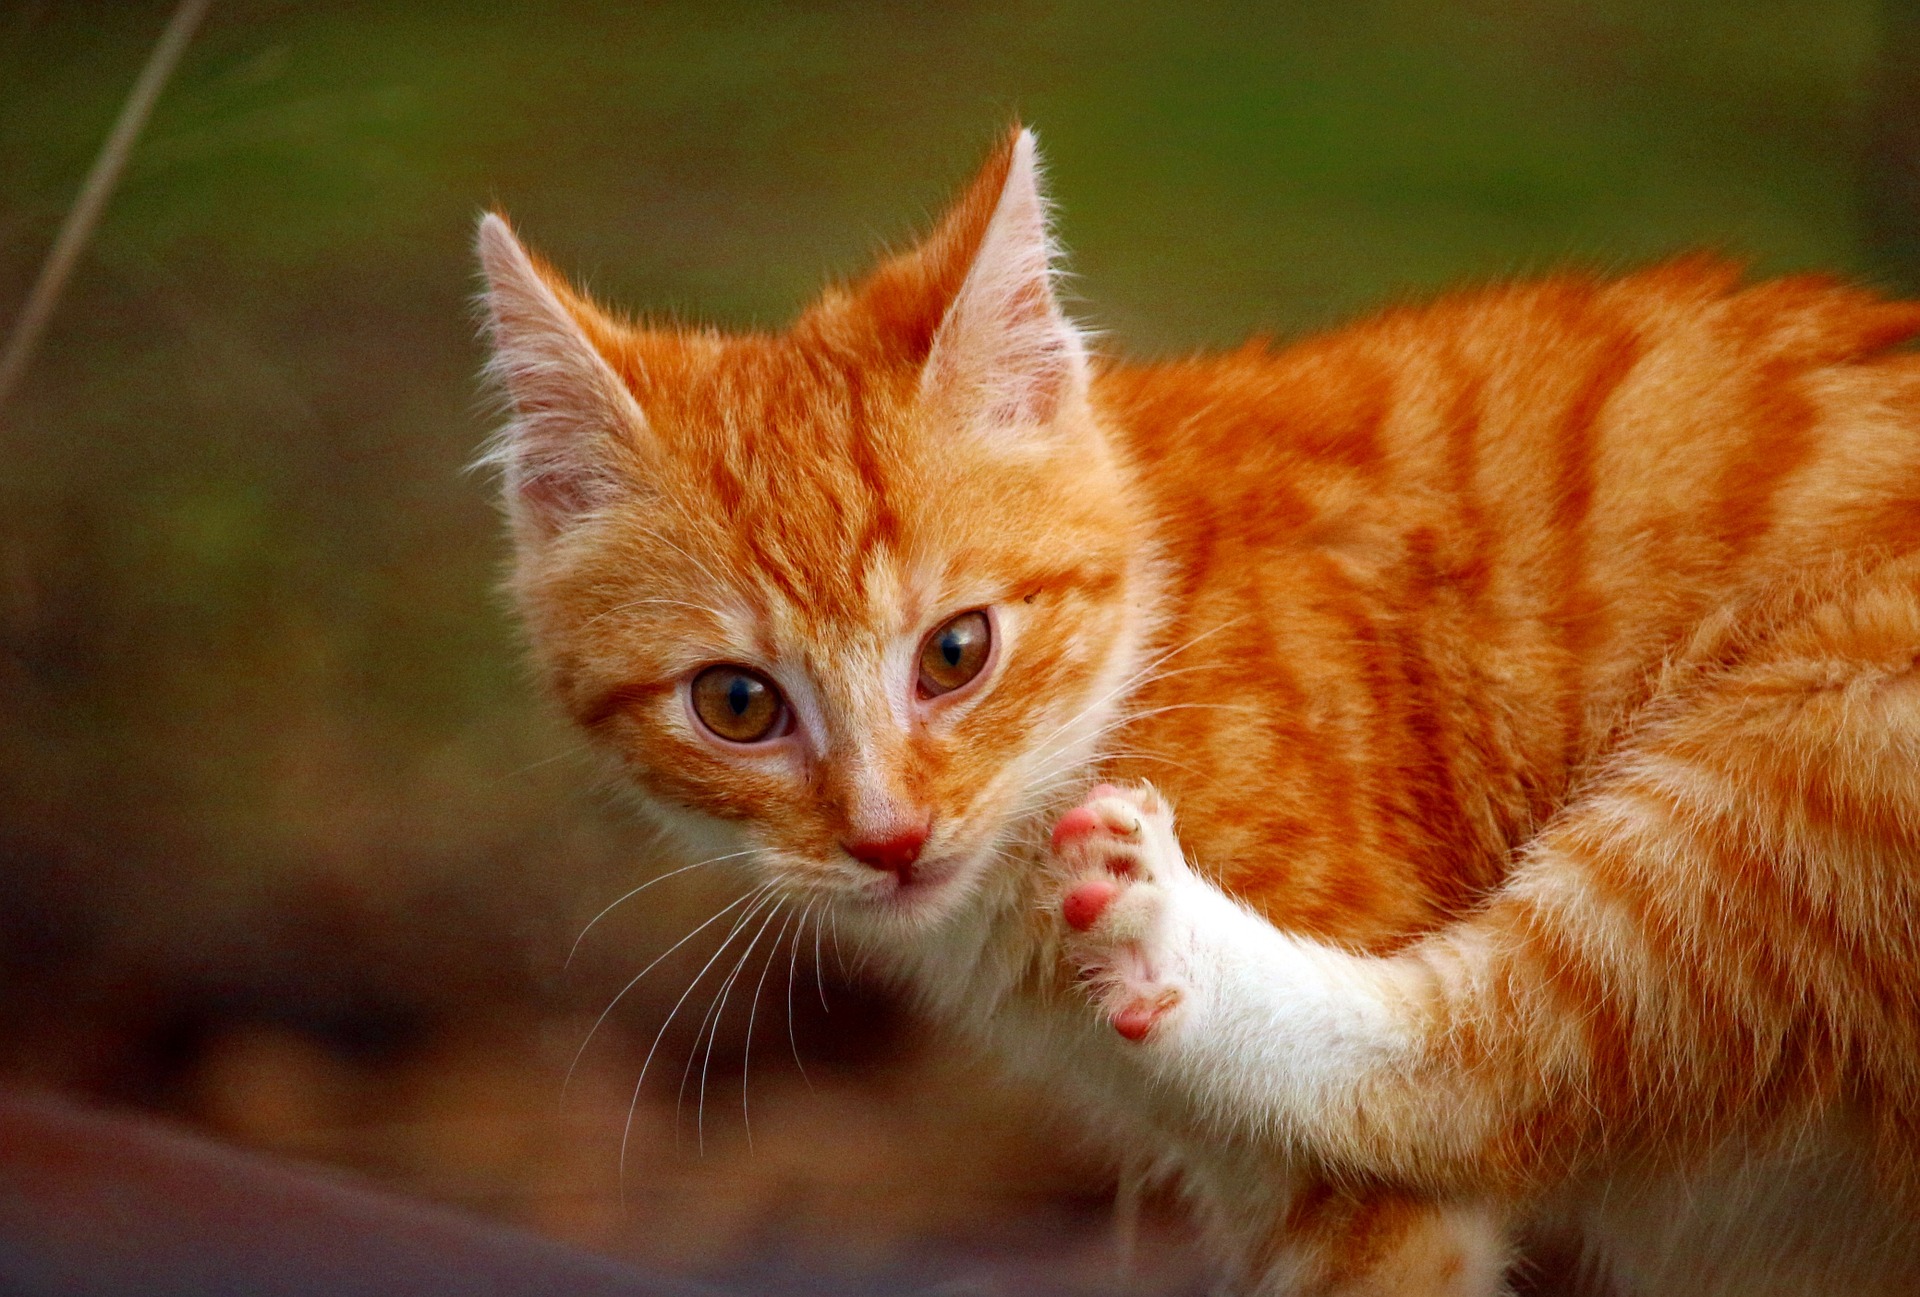 Nechat svou kočku volně se dostat do ohrožení. Odcházející kočky žijí v průměru o několik let kratší a trpí vážnějšími chorobami - včetně zlomenin, při nichž kočka kulhá.